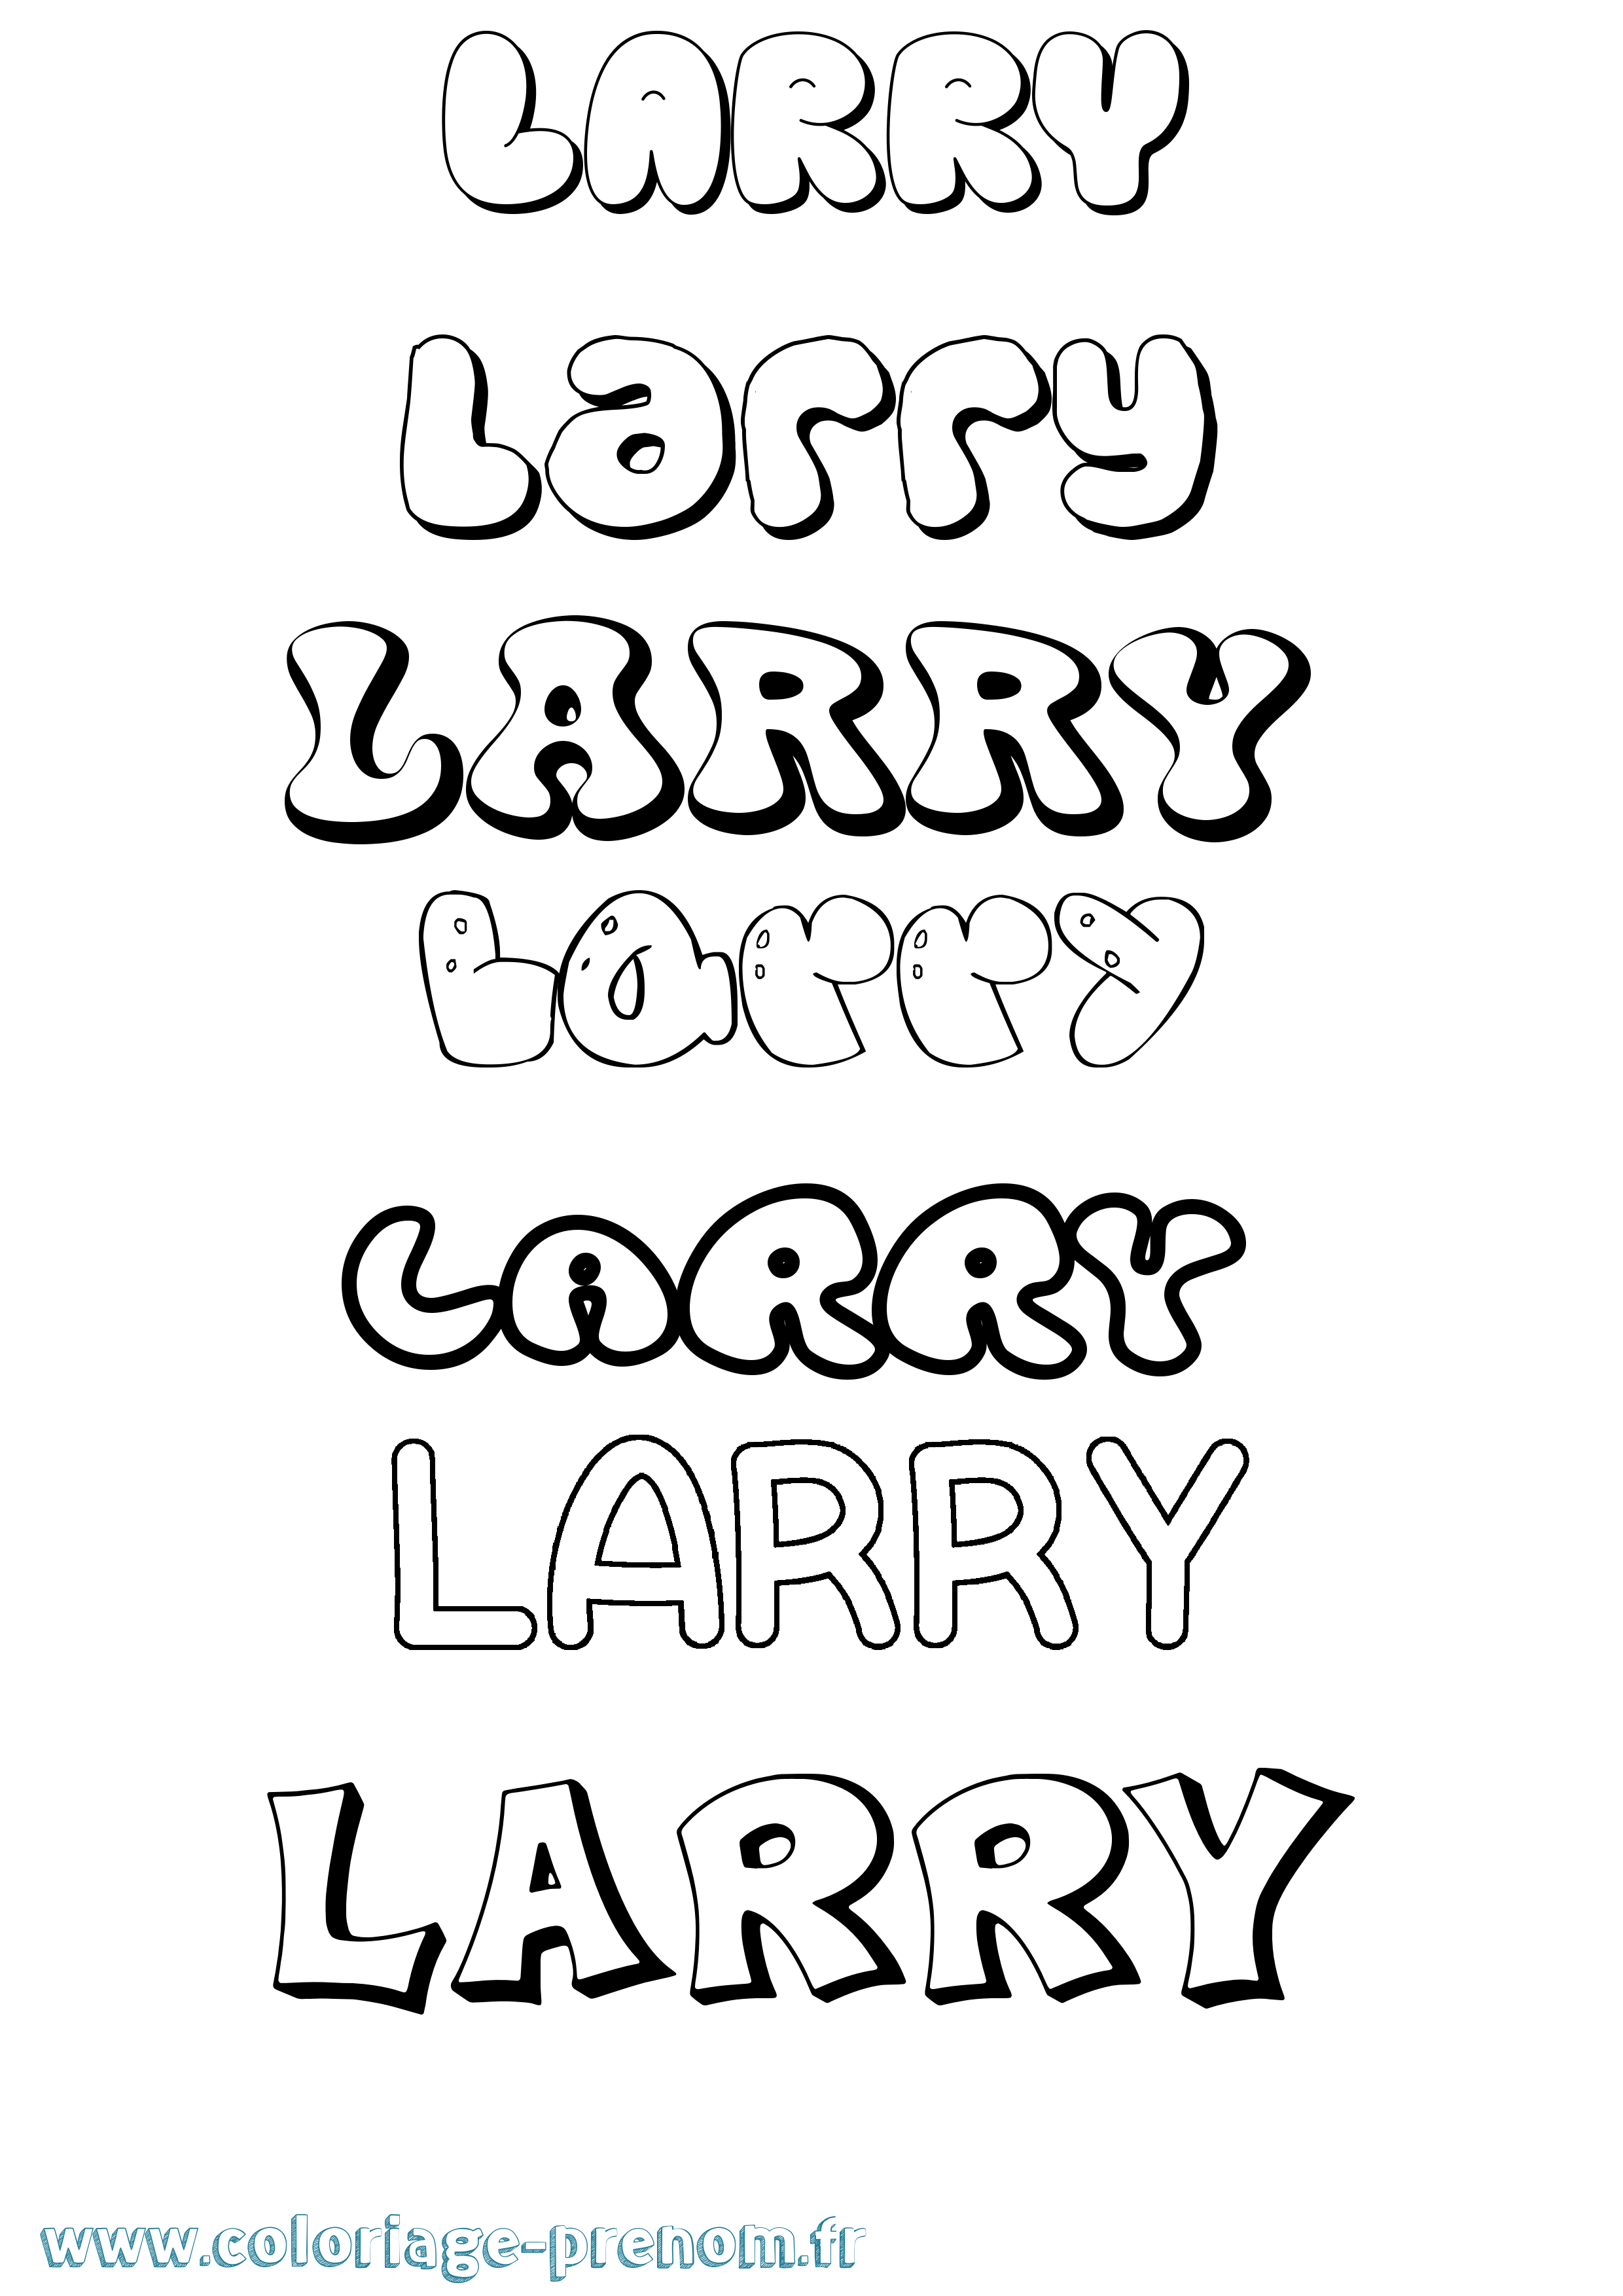 Coloriage prénom Larry Bubble